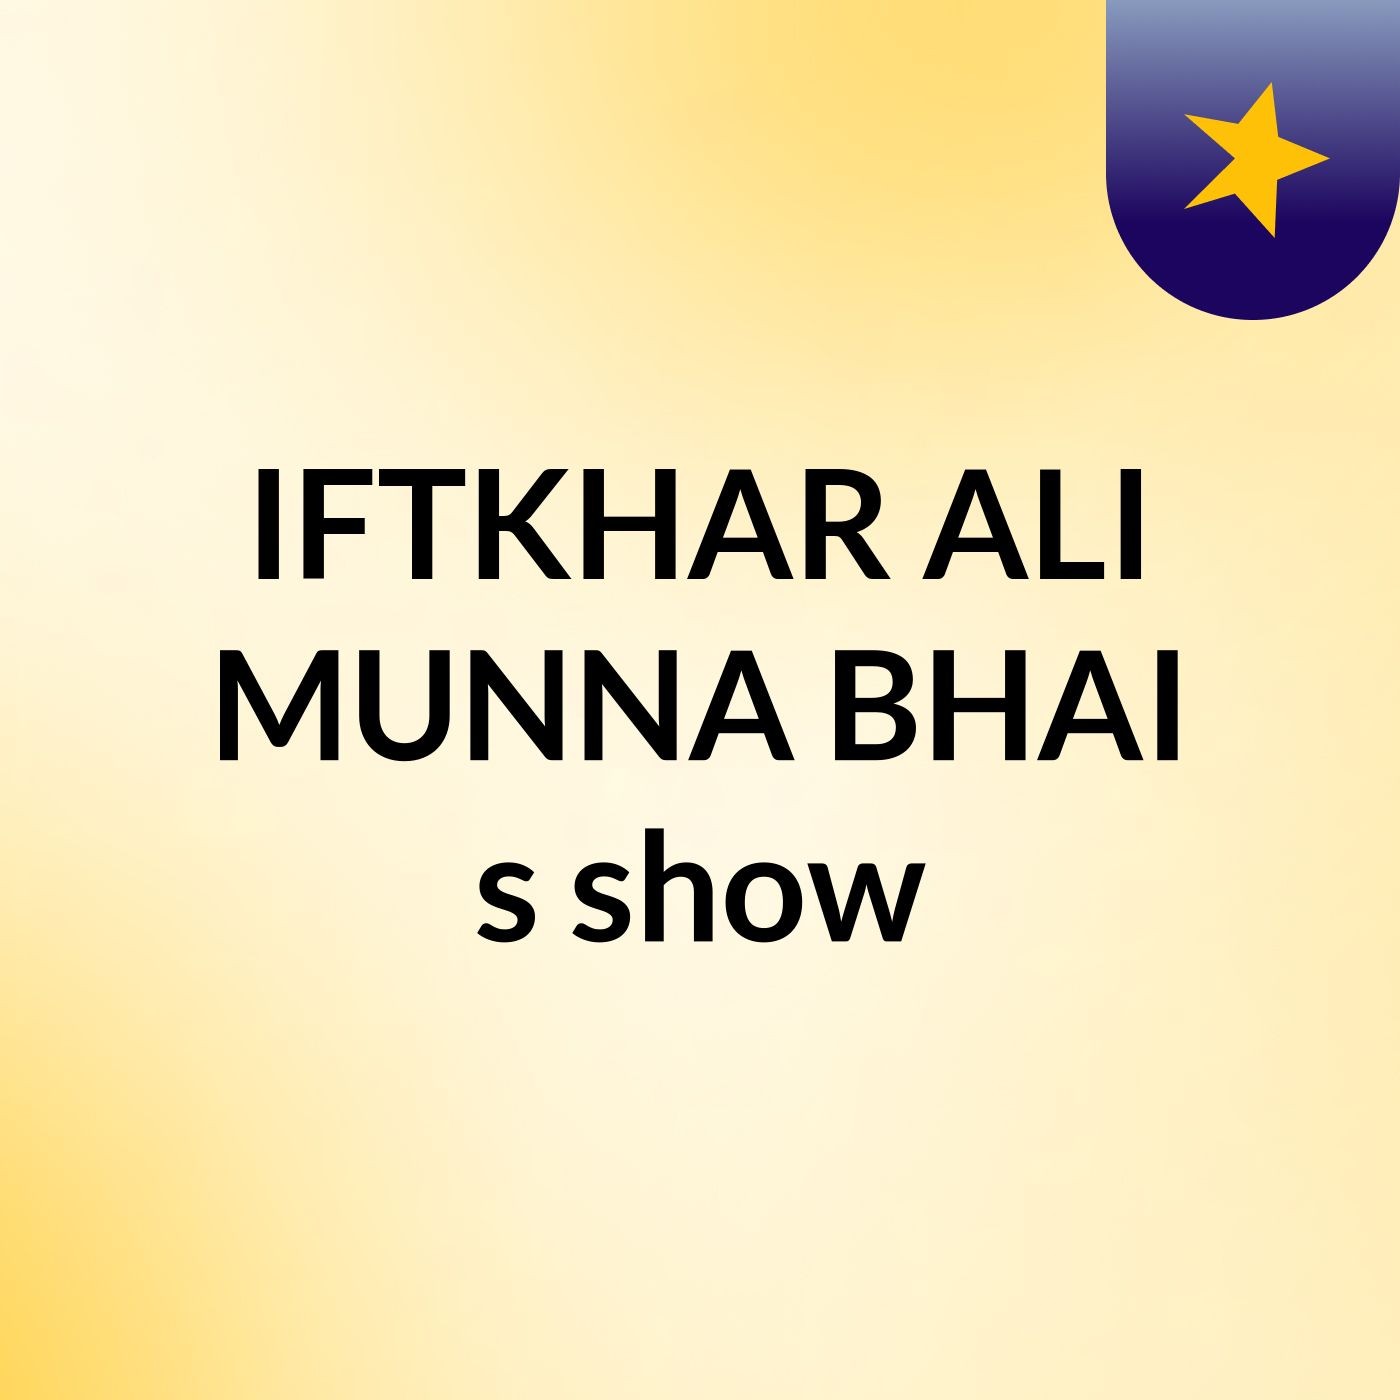 IFTKHAR ALI MUNNA BHAI's show